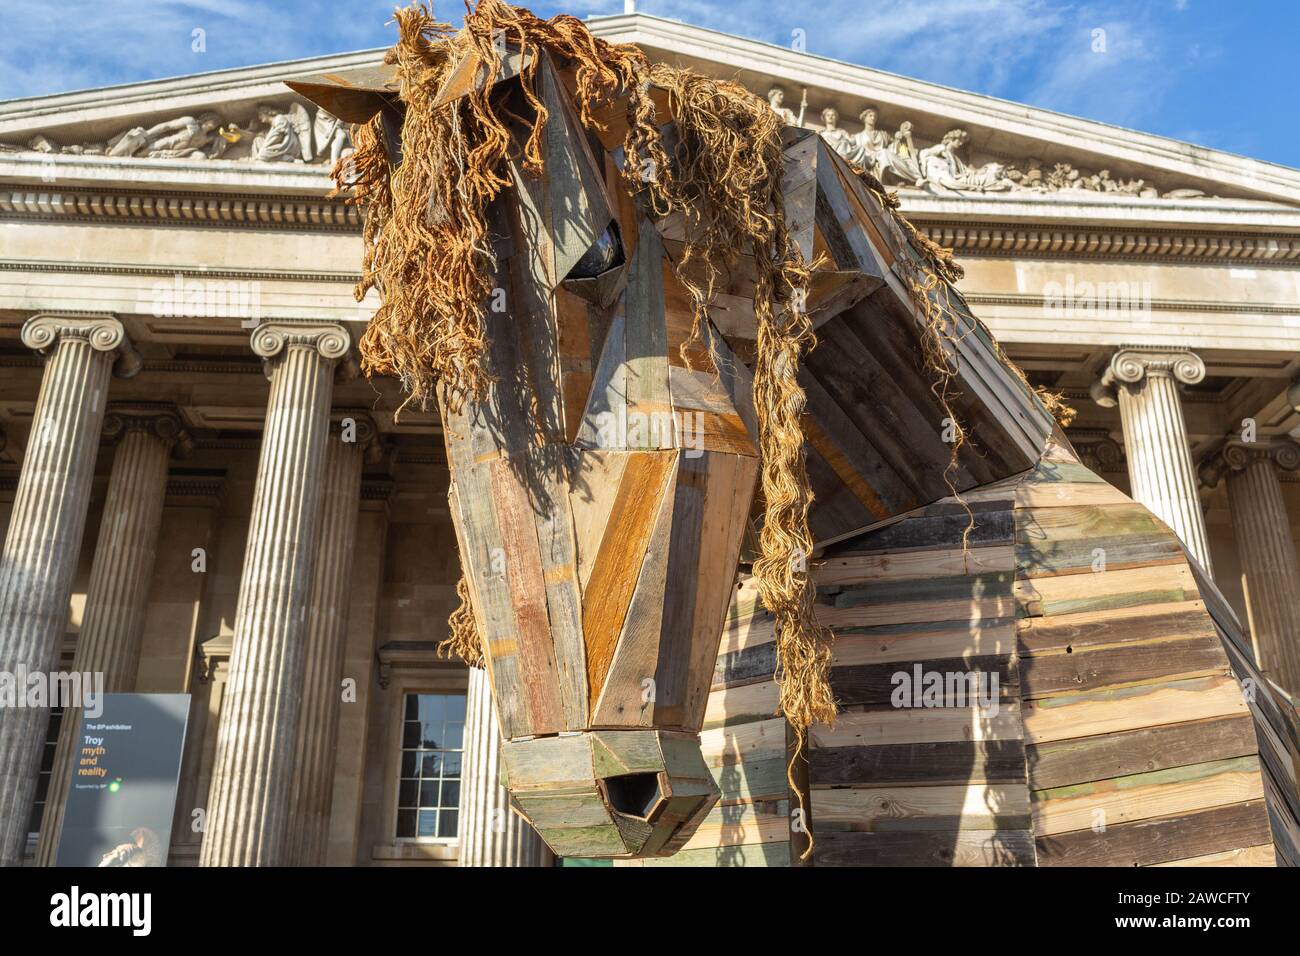 British Museum, Londra, Regno Unito. 8th Feb, 2020. Azione di massa diretta da parte del gruppo di campagne BP o non BP, contro i musei ha continuato la sponsorizzazione da parte del gigante petrolchimico BP nonostante la crescente crisi climatica. Penelope Barritt/Alamy Live News Foto Stock